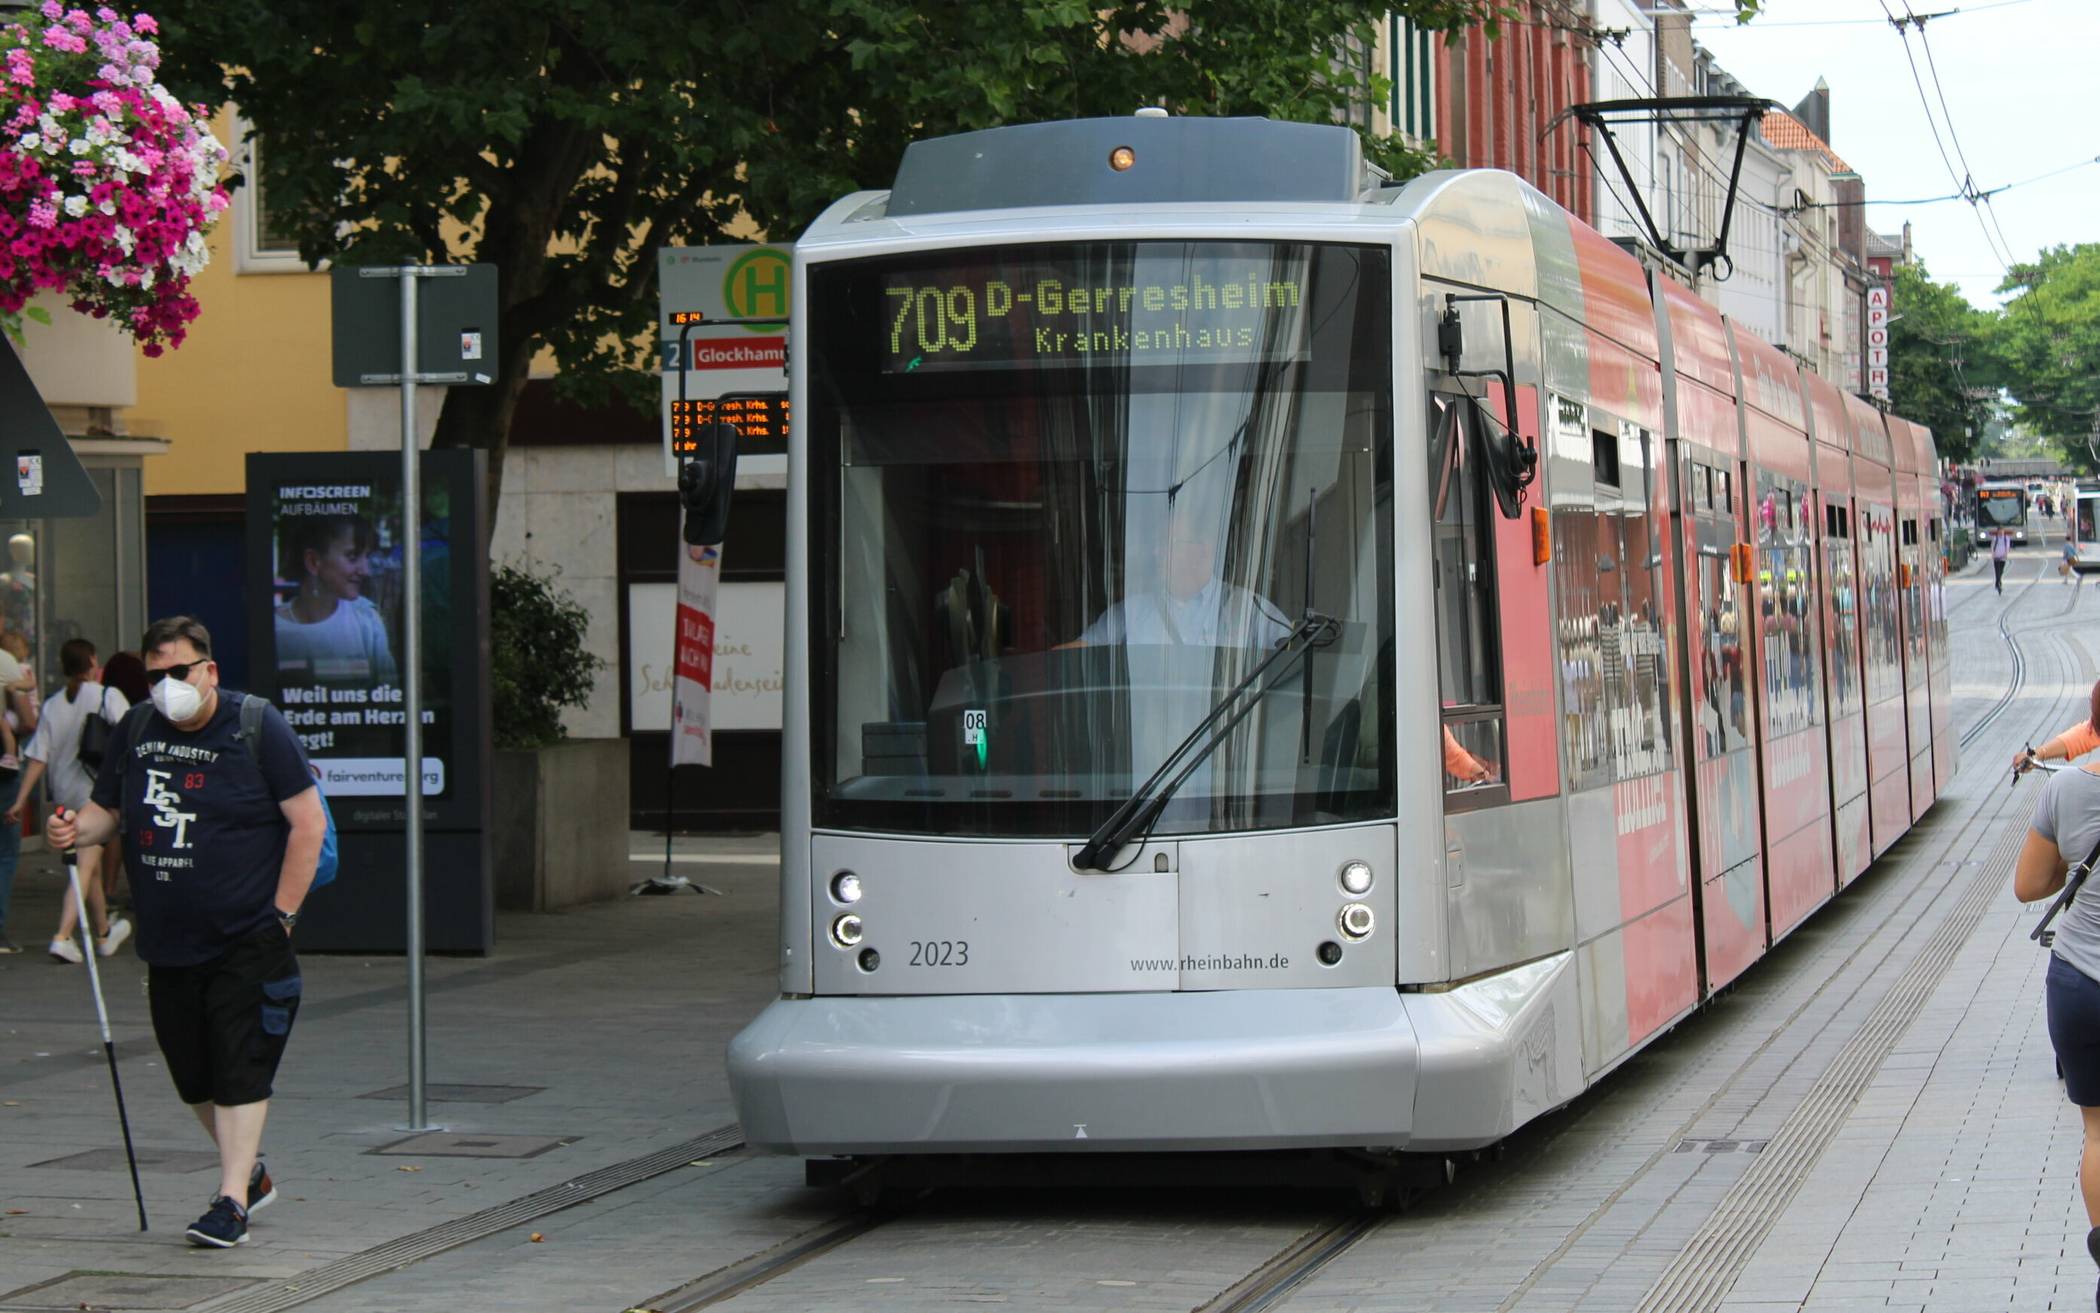  Die Fahrt mit der Straßenbahn durch die City ist seit Anfang des Jahres kostenlos. CDU und FDP wollen dieses Angebot sofort stoppen. 